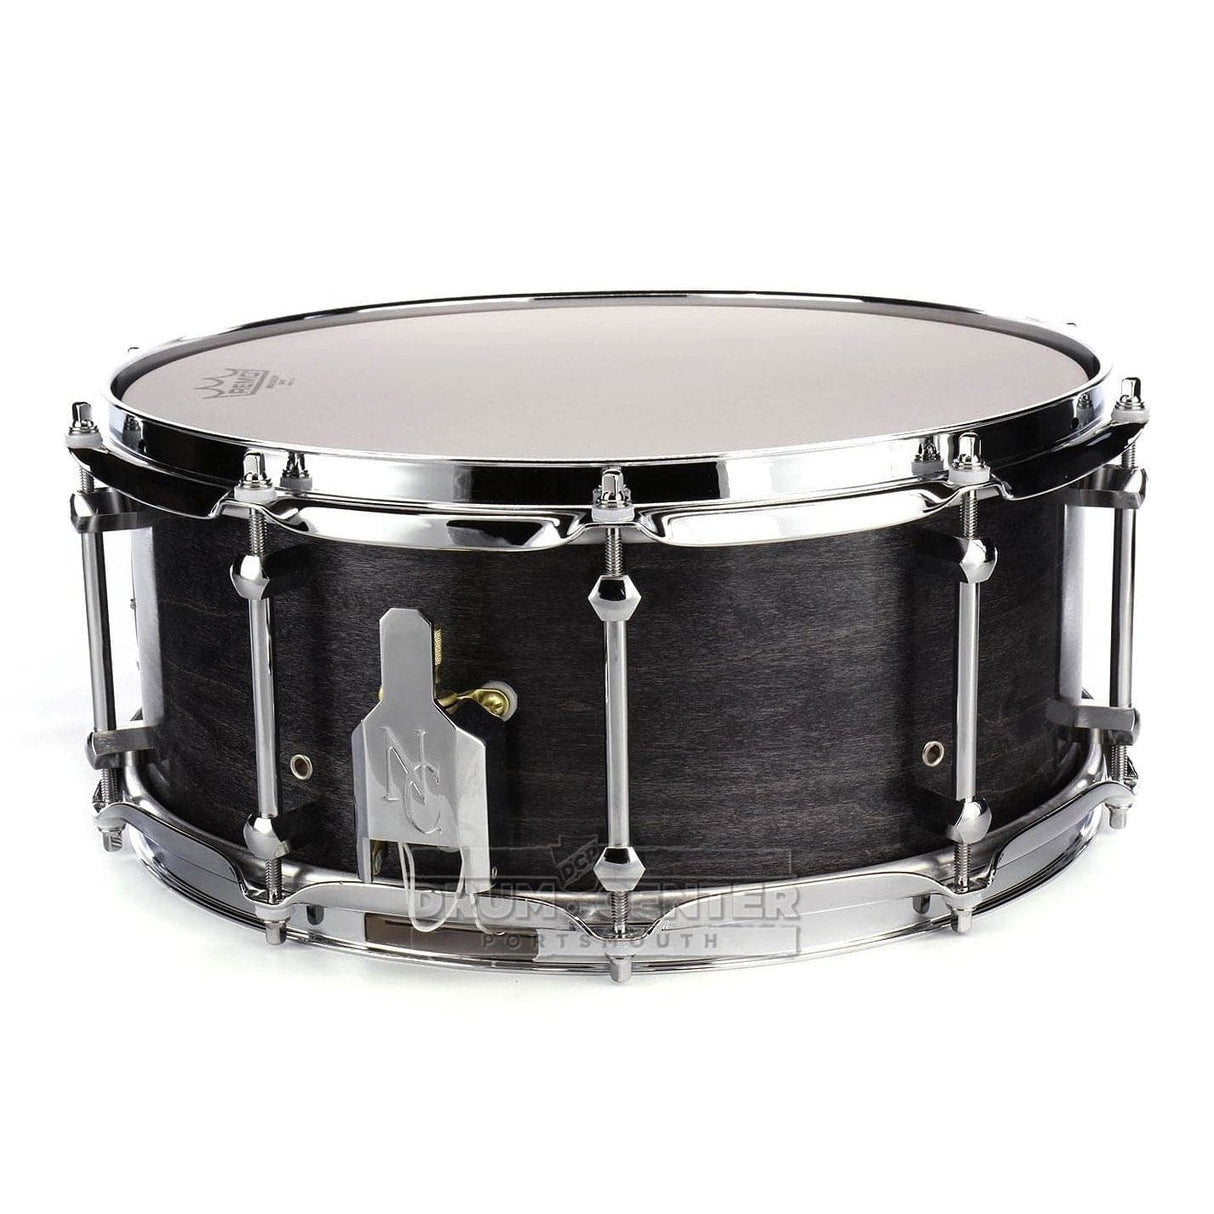 Noble & Cooley Horizon Snare Drum 14x6 Blackwash Oil